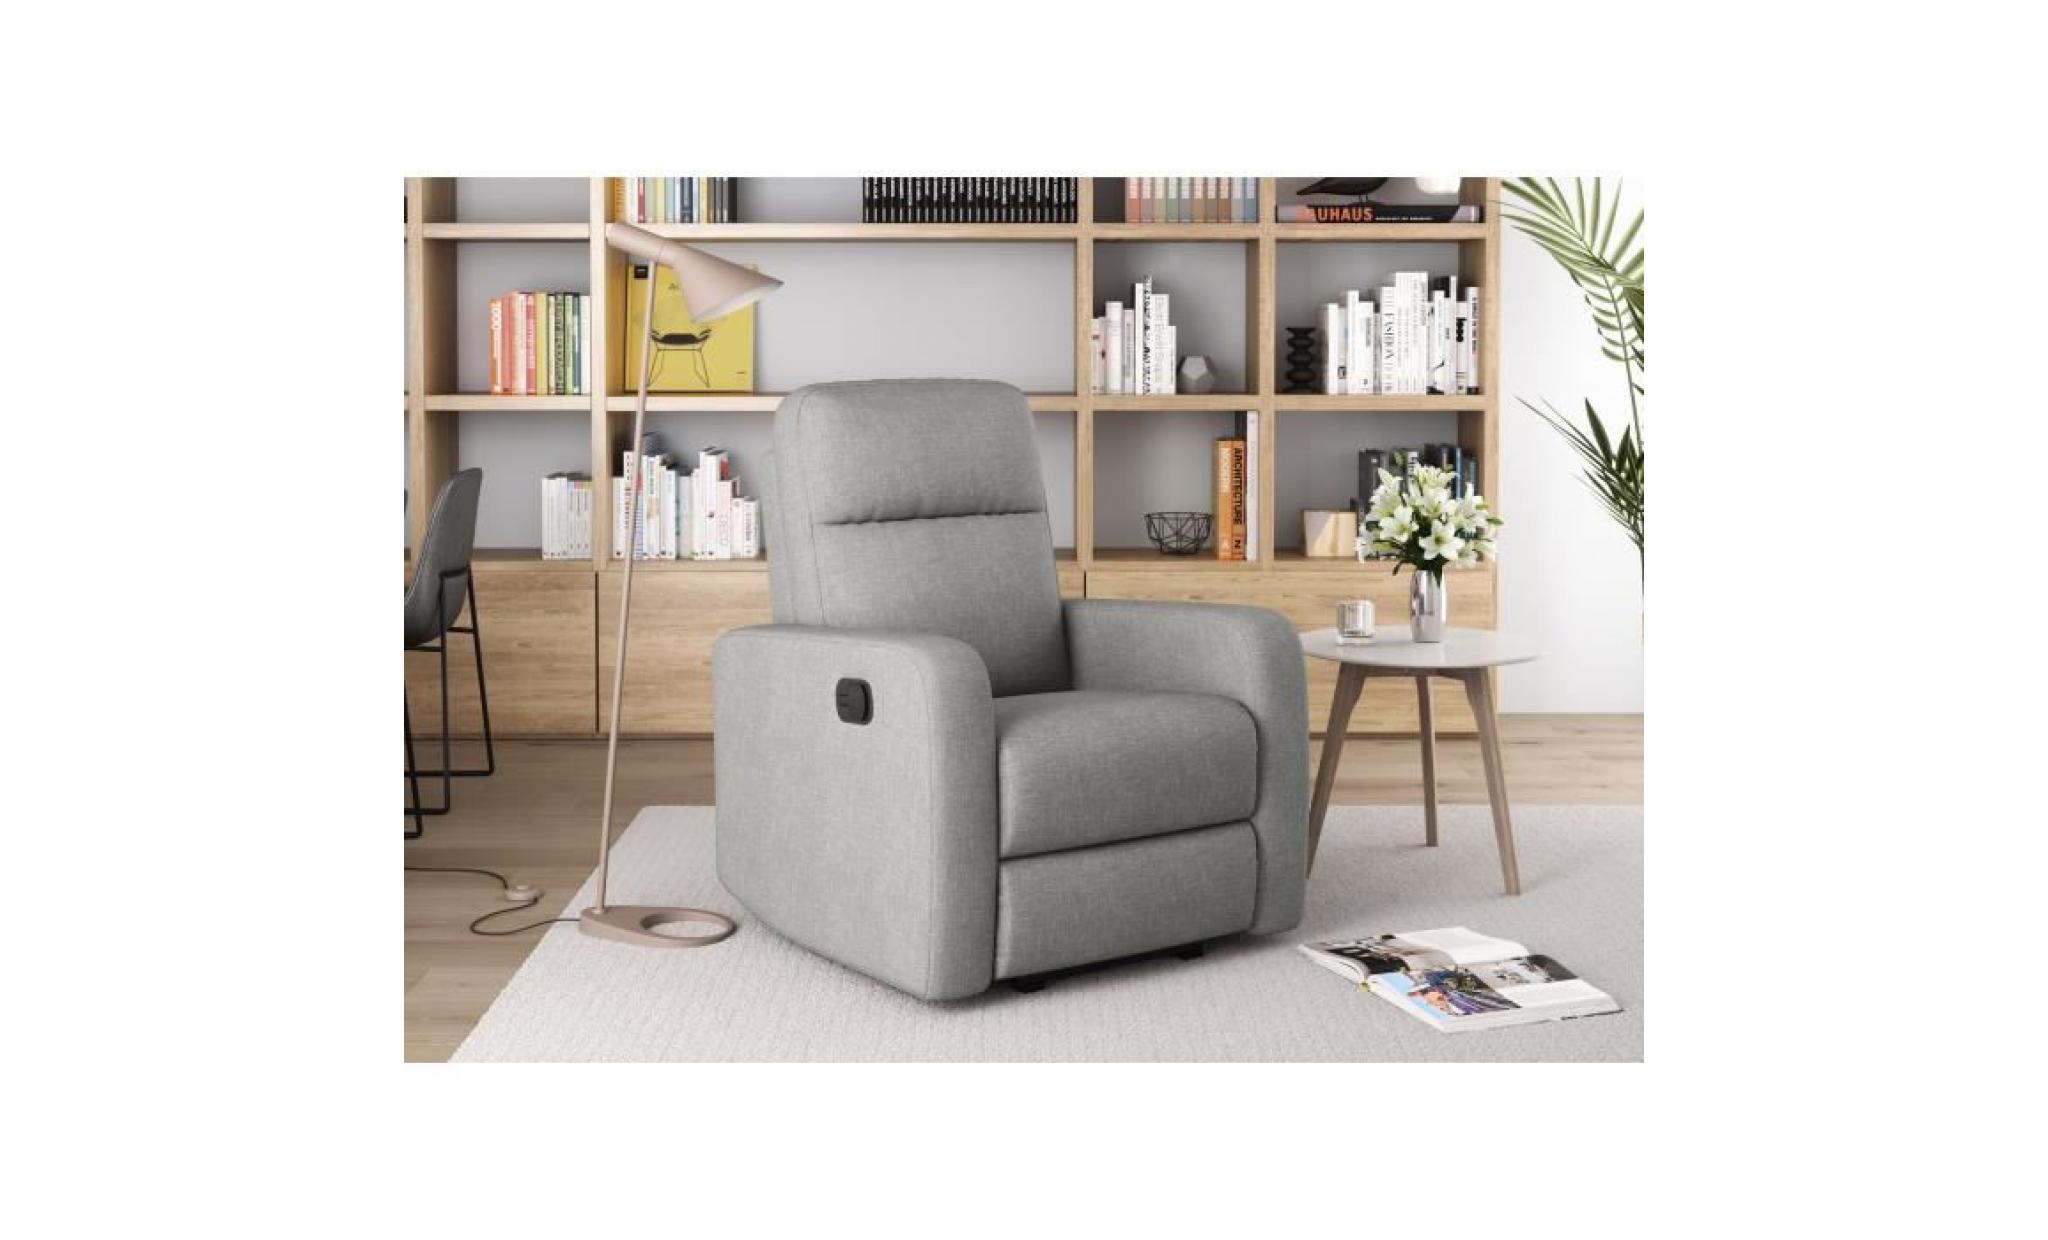 relax fauteuil de relaxation manuel   tissu gris   classique   l 76 x p 88 cm pas cher